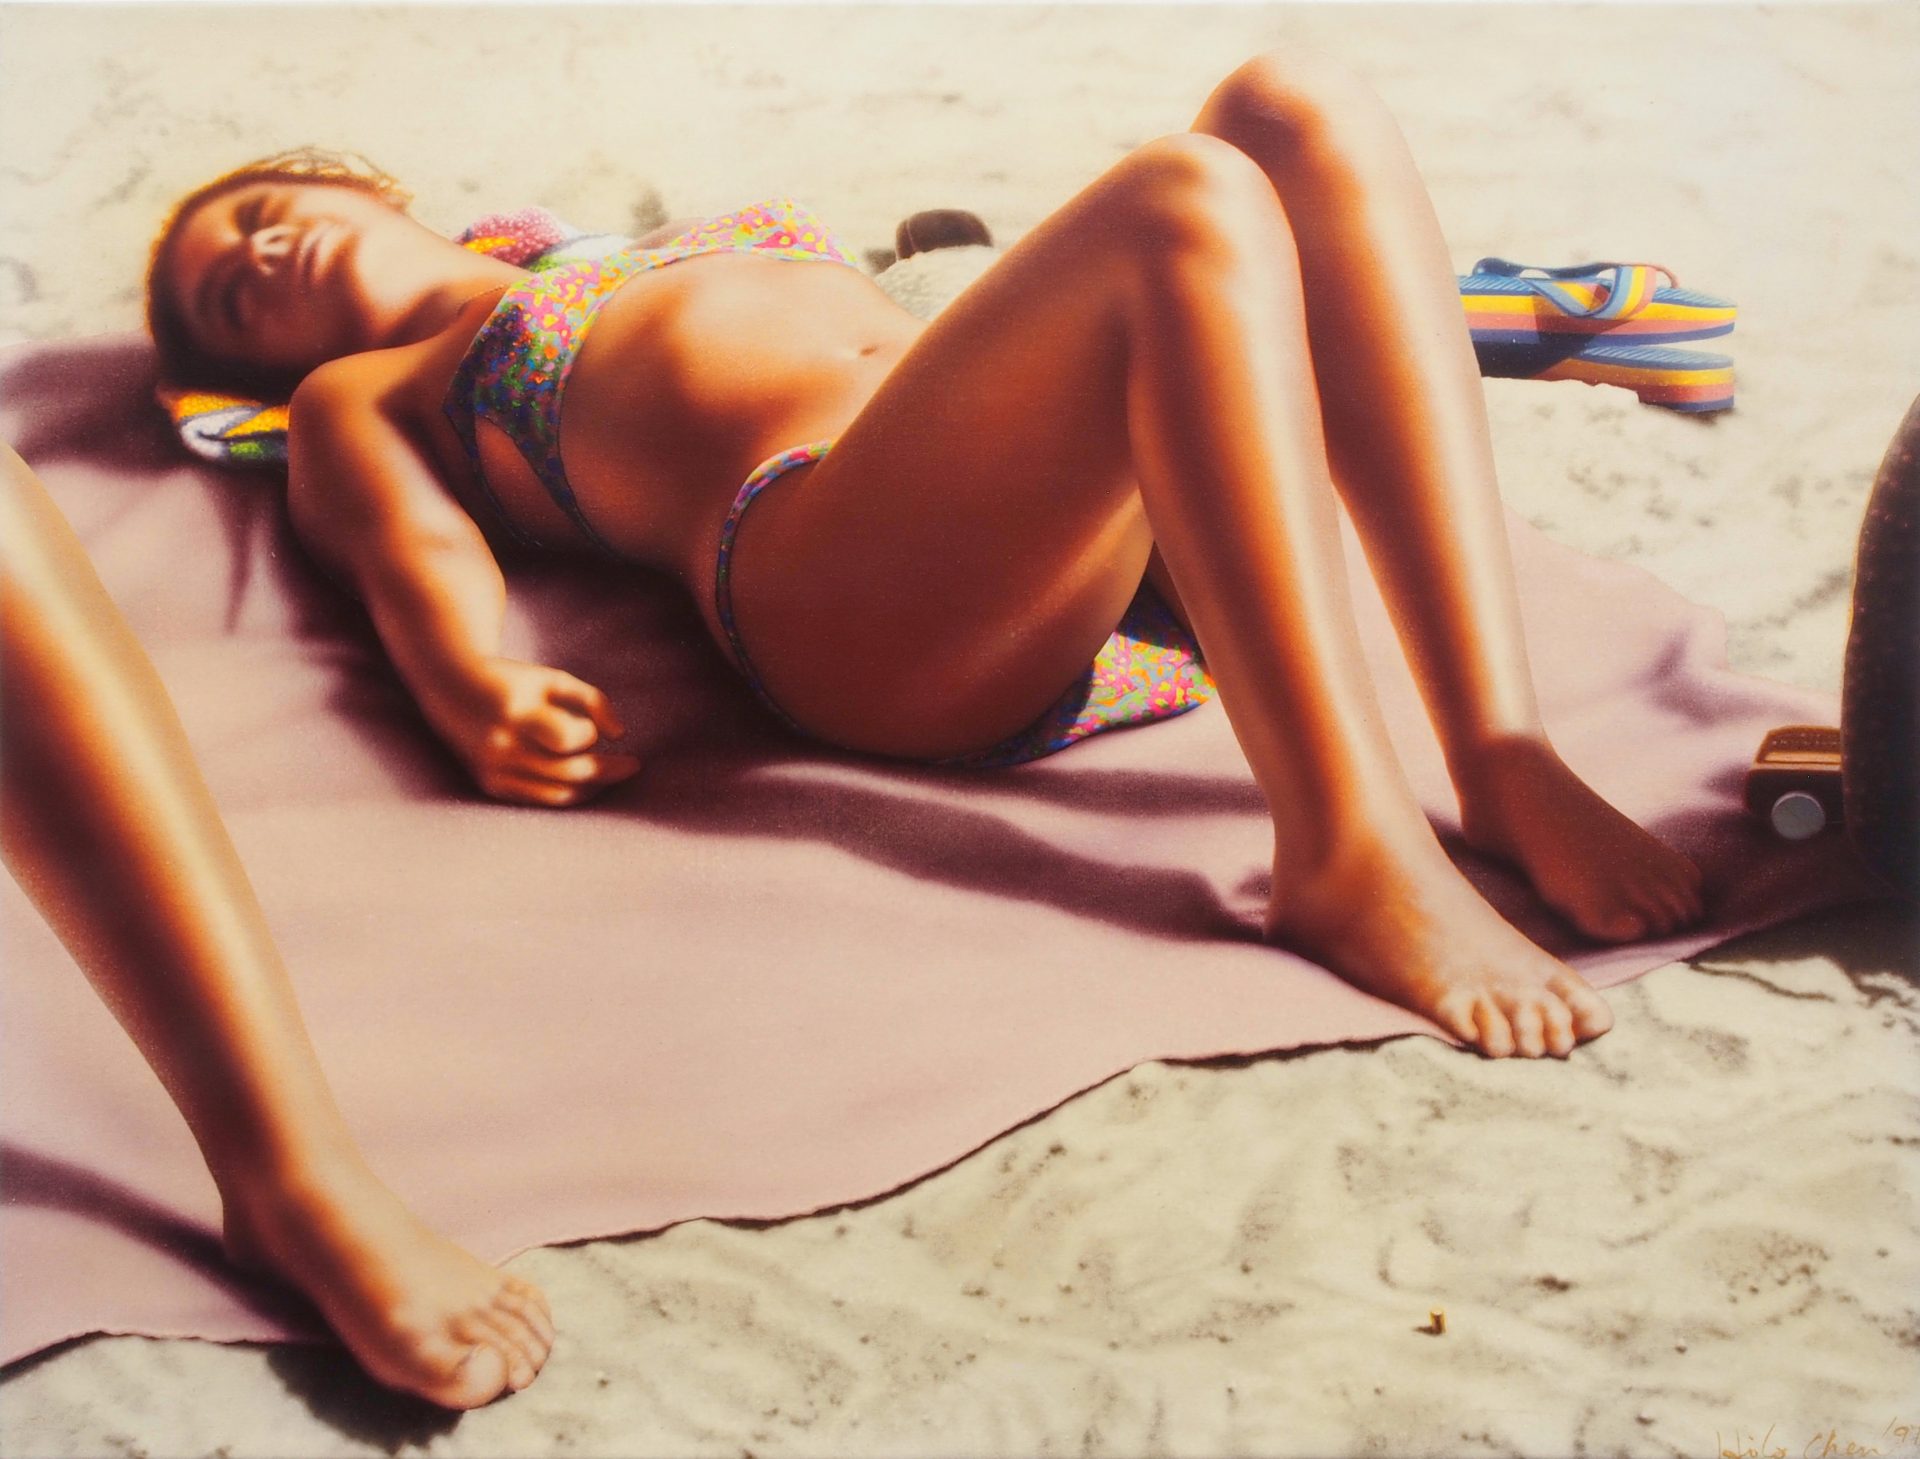 陳昭宏 Hilo Chen, 海灘 136 Beach 136, 1997, 畫布壓克力顏料 acrylics on canvas, 76.2x101.6 cm